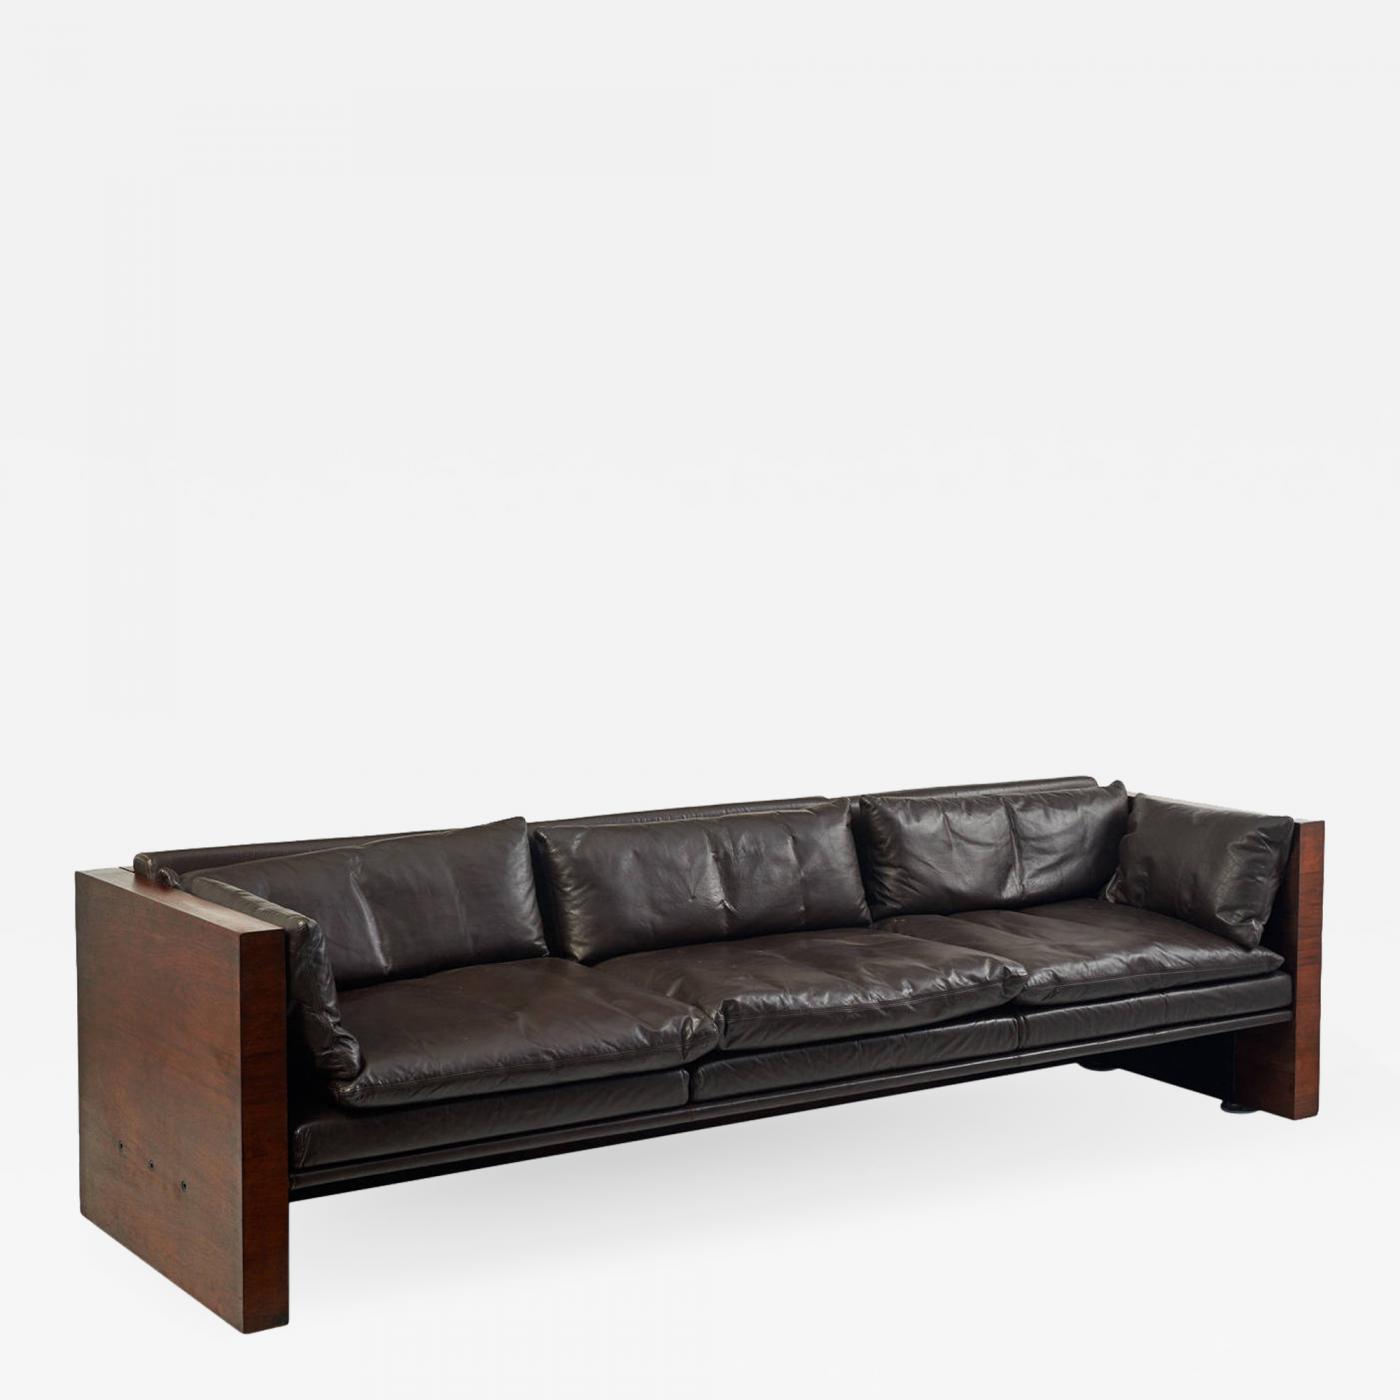 1970s leather sofa